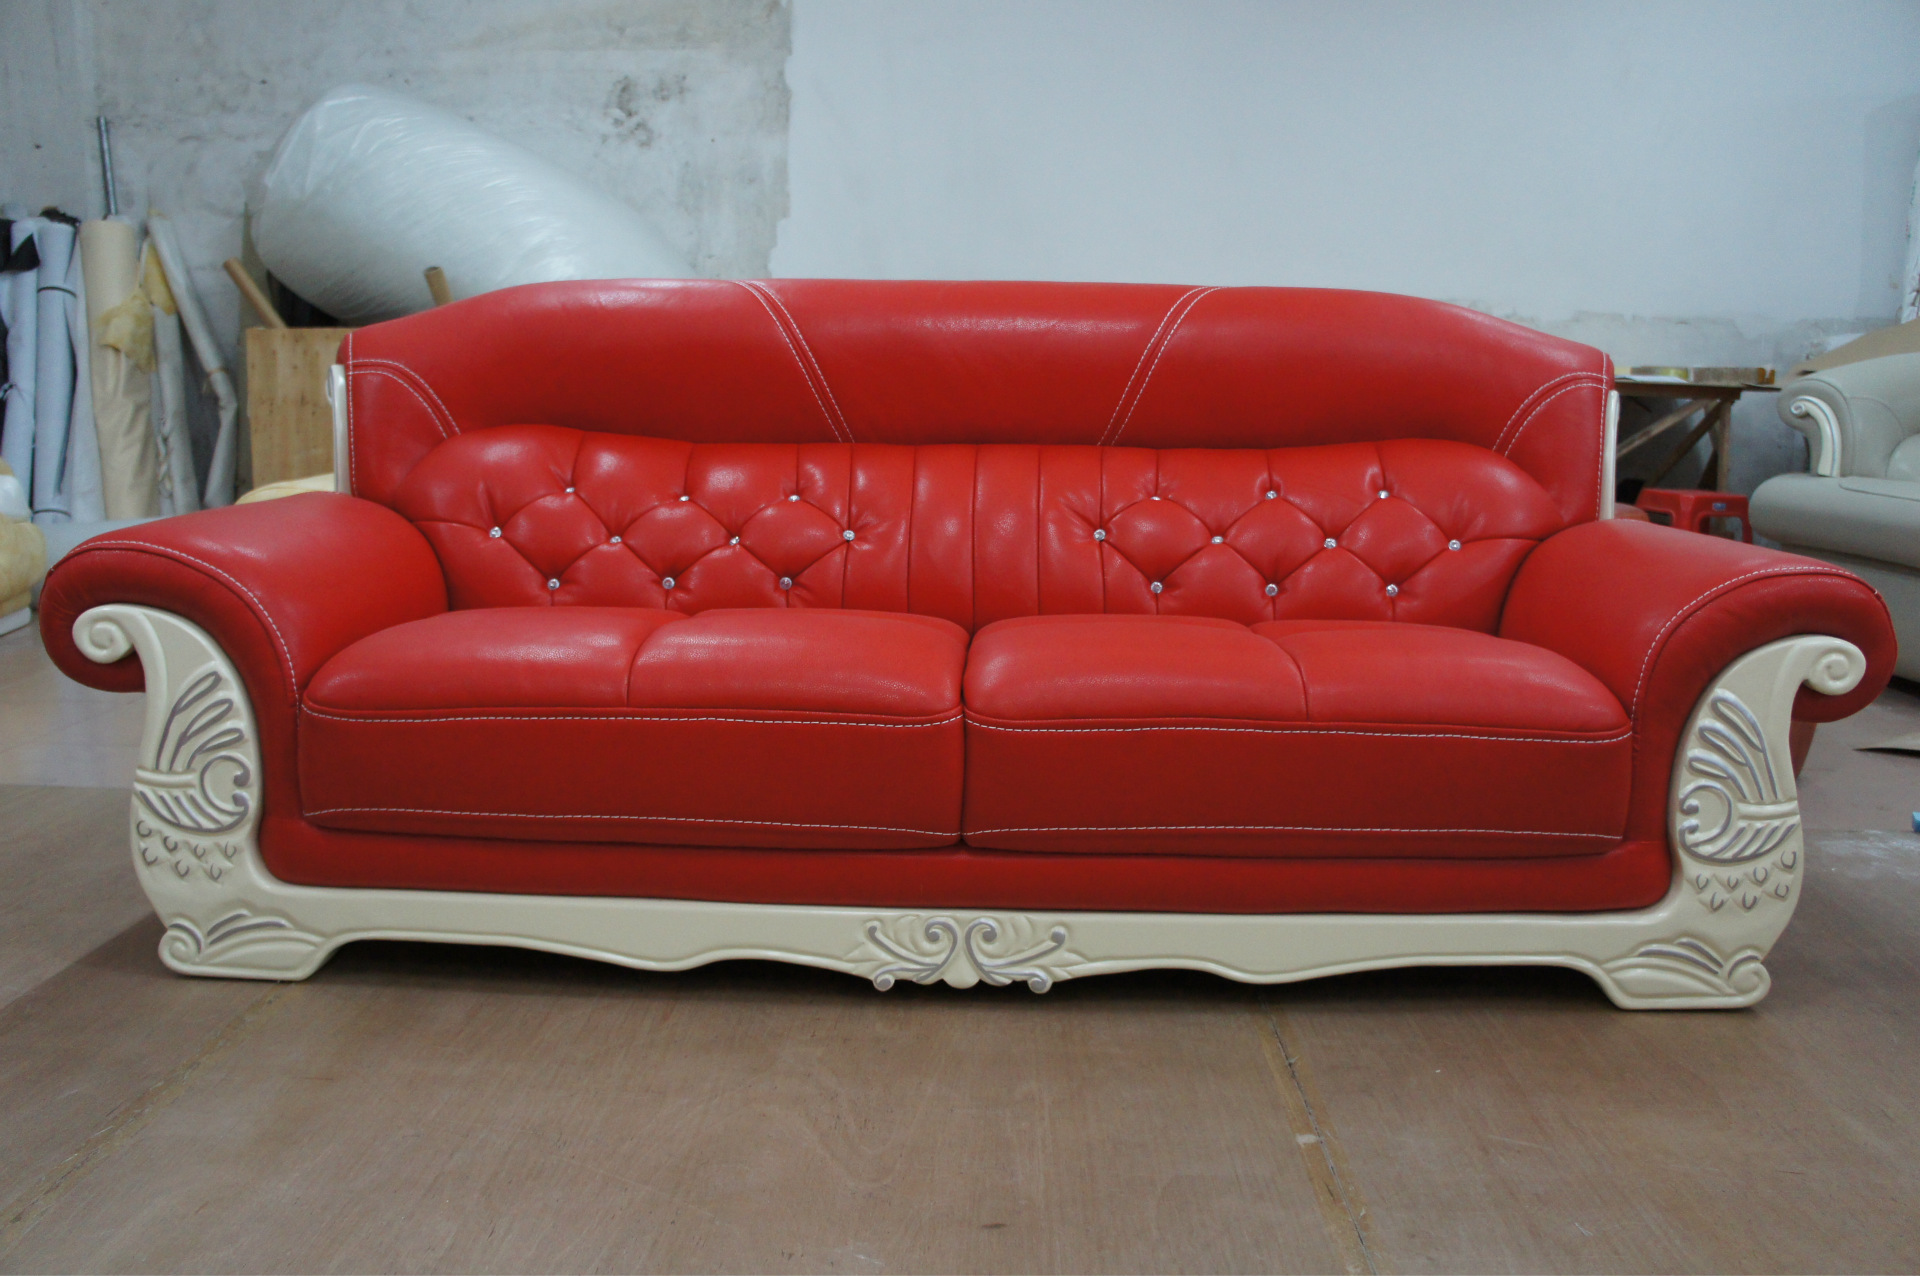 【帝梵世居】欧式风格经典时尚真皮沙发系列a836大红色阿里好资源